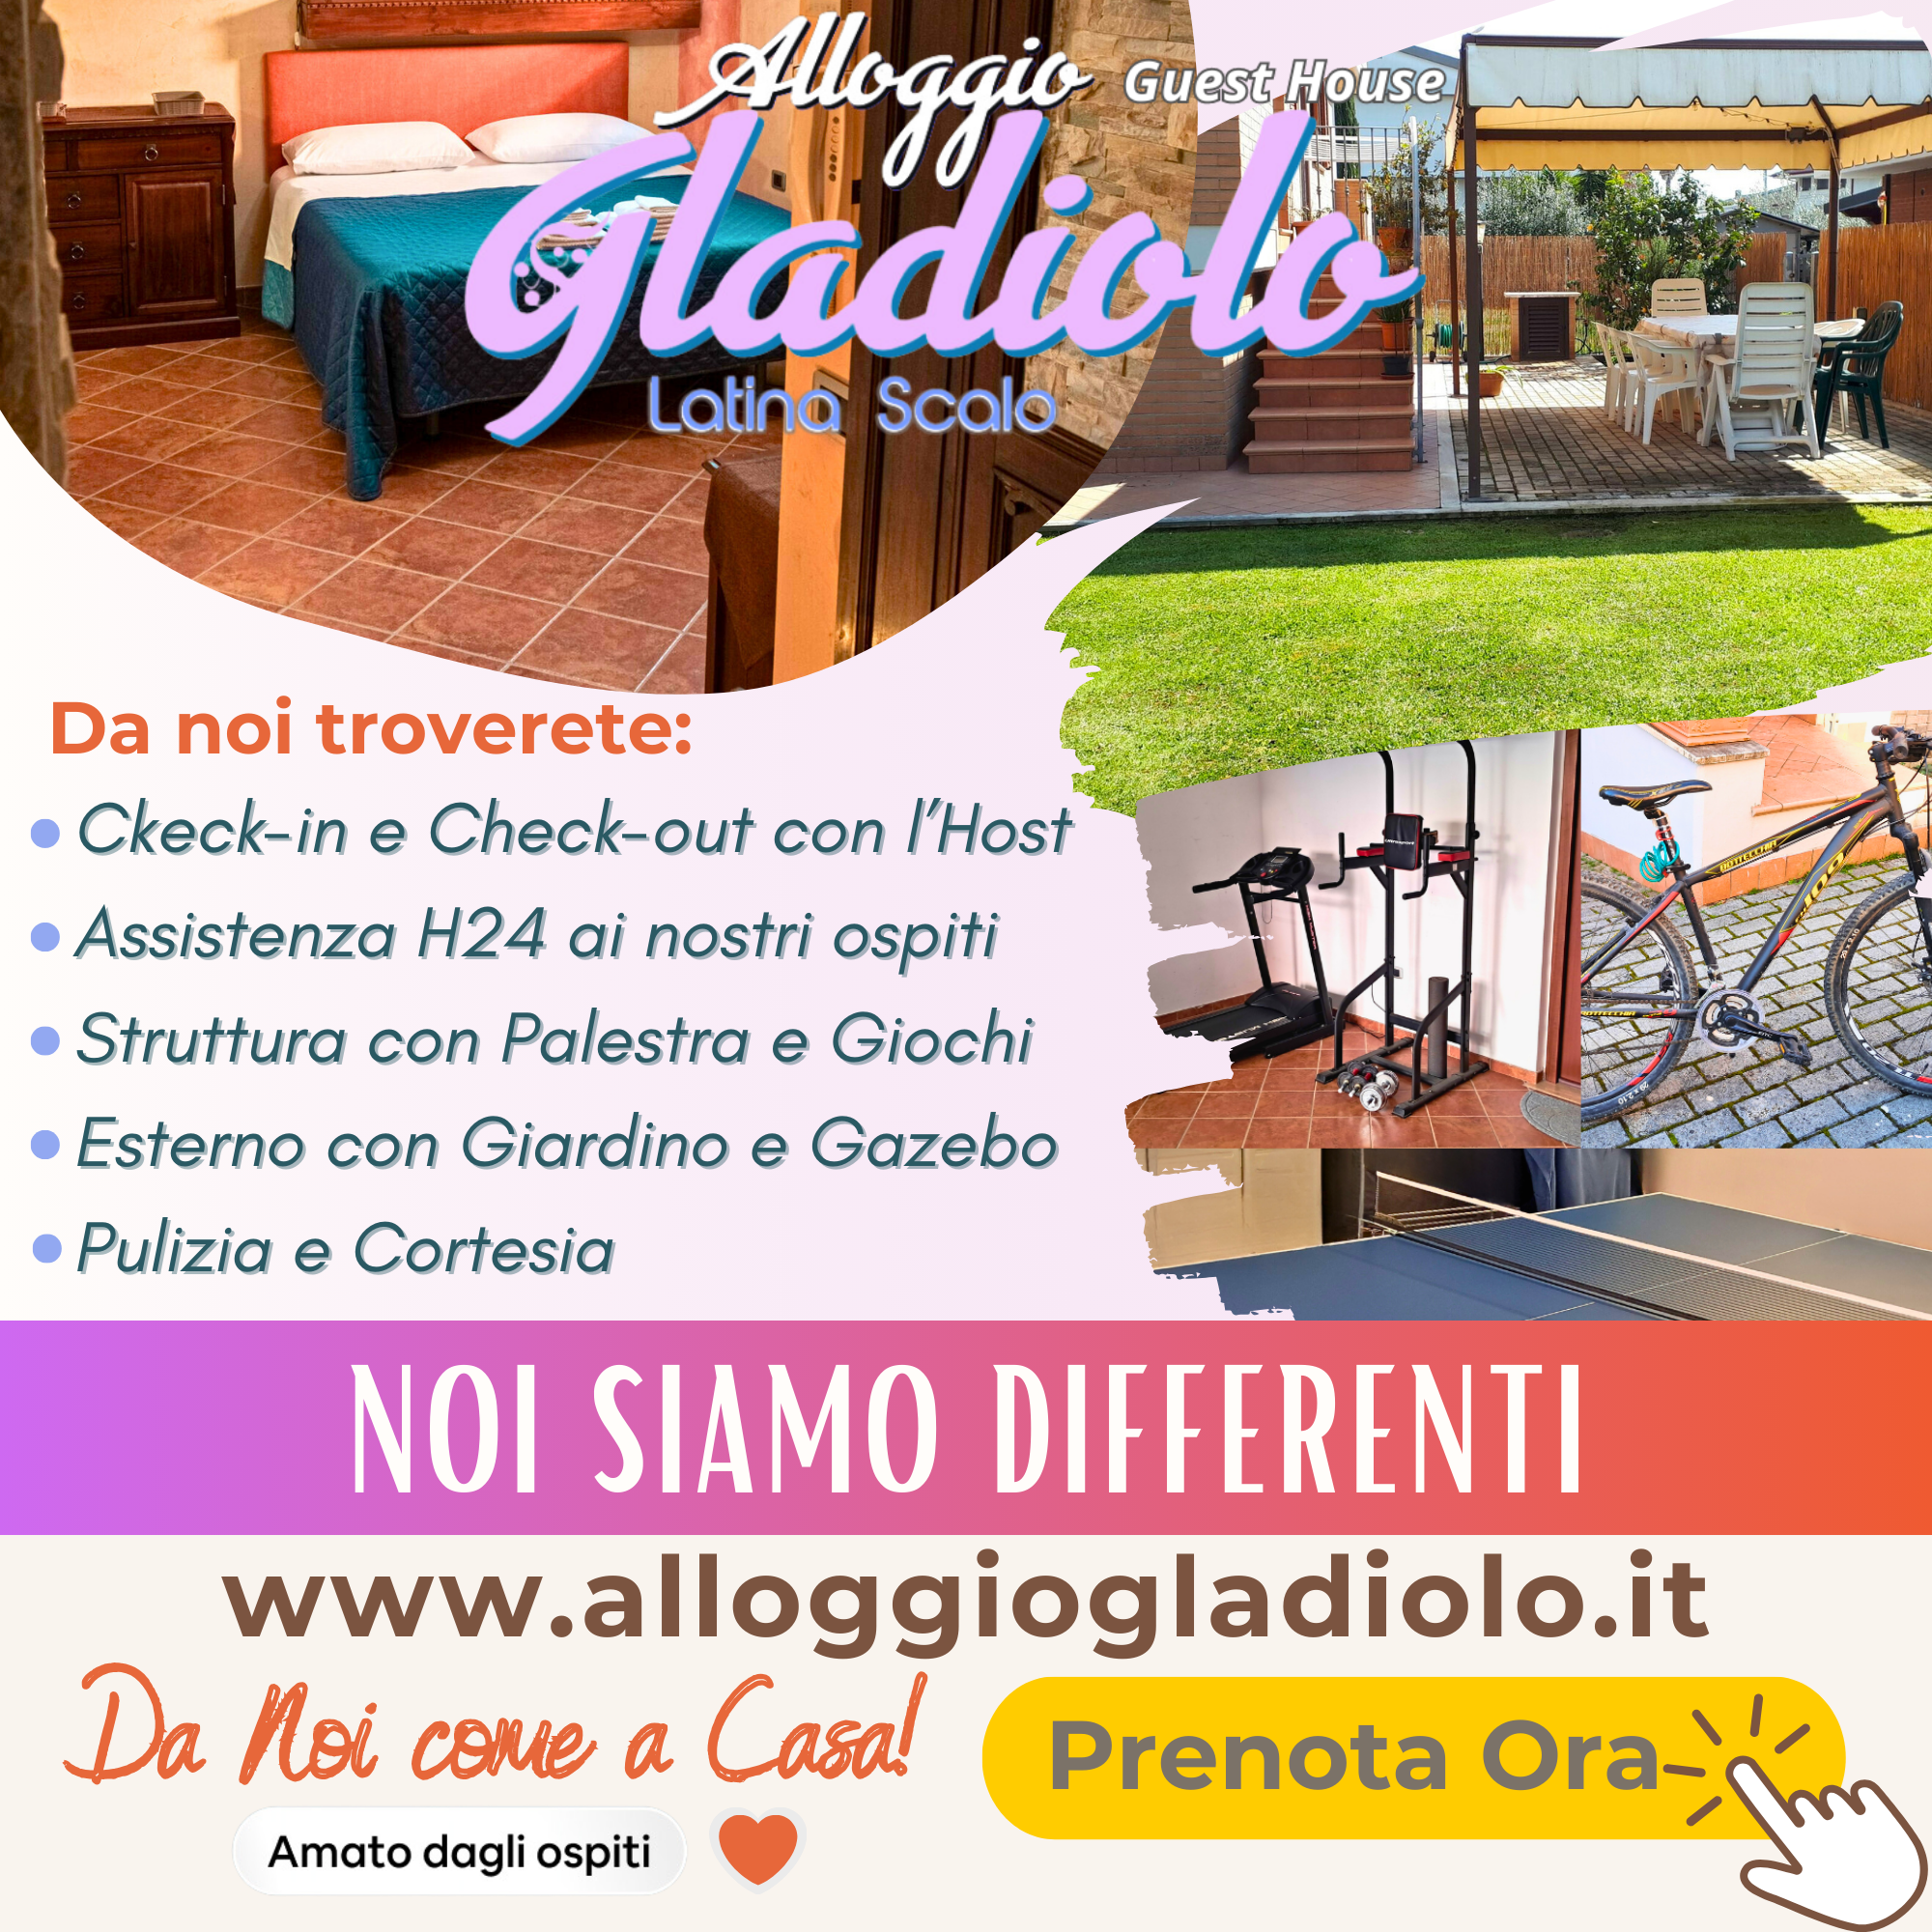 Alloggio Gladiolo Guest House - Latina Scalo - Noi siamo differenti